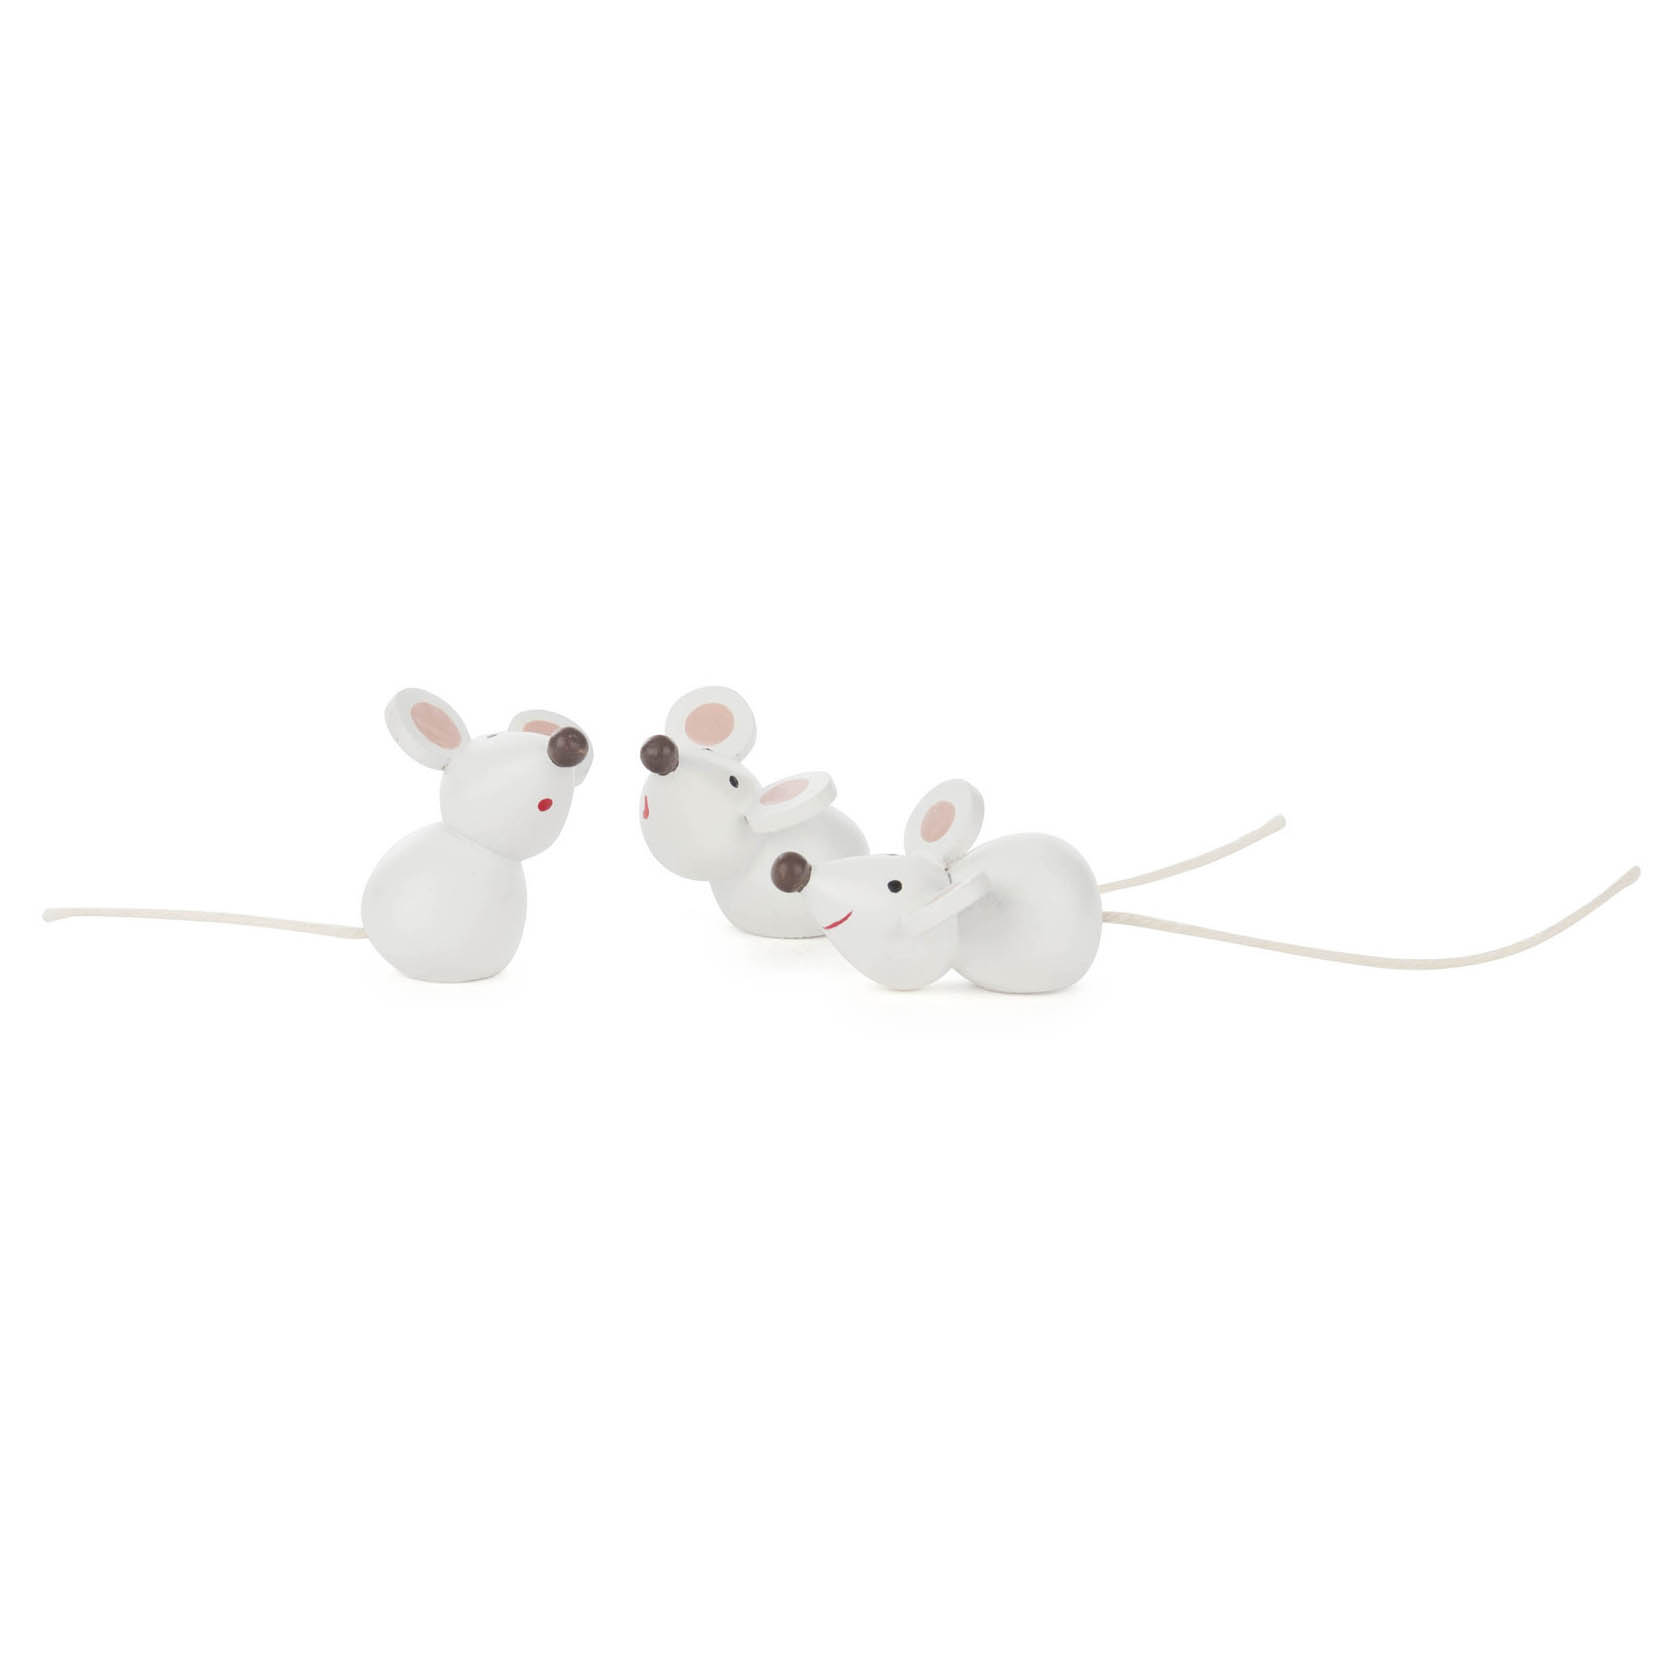 Mäuse (3) im Dregeno Online Shop günstig kaufen